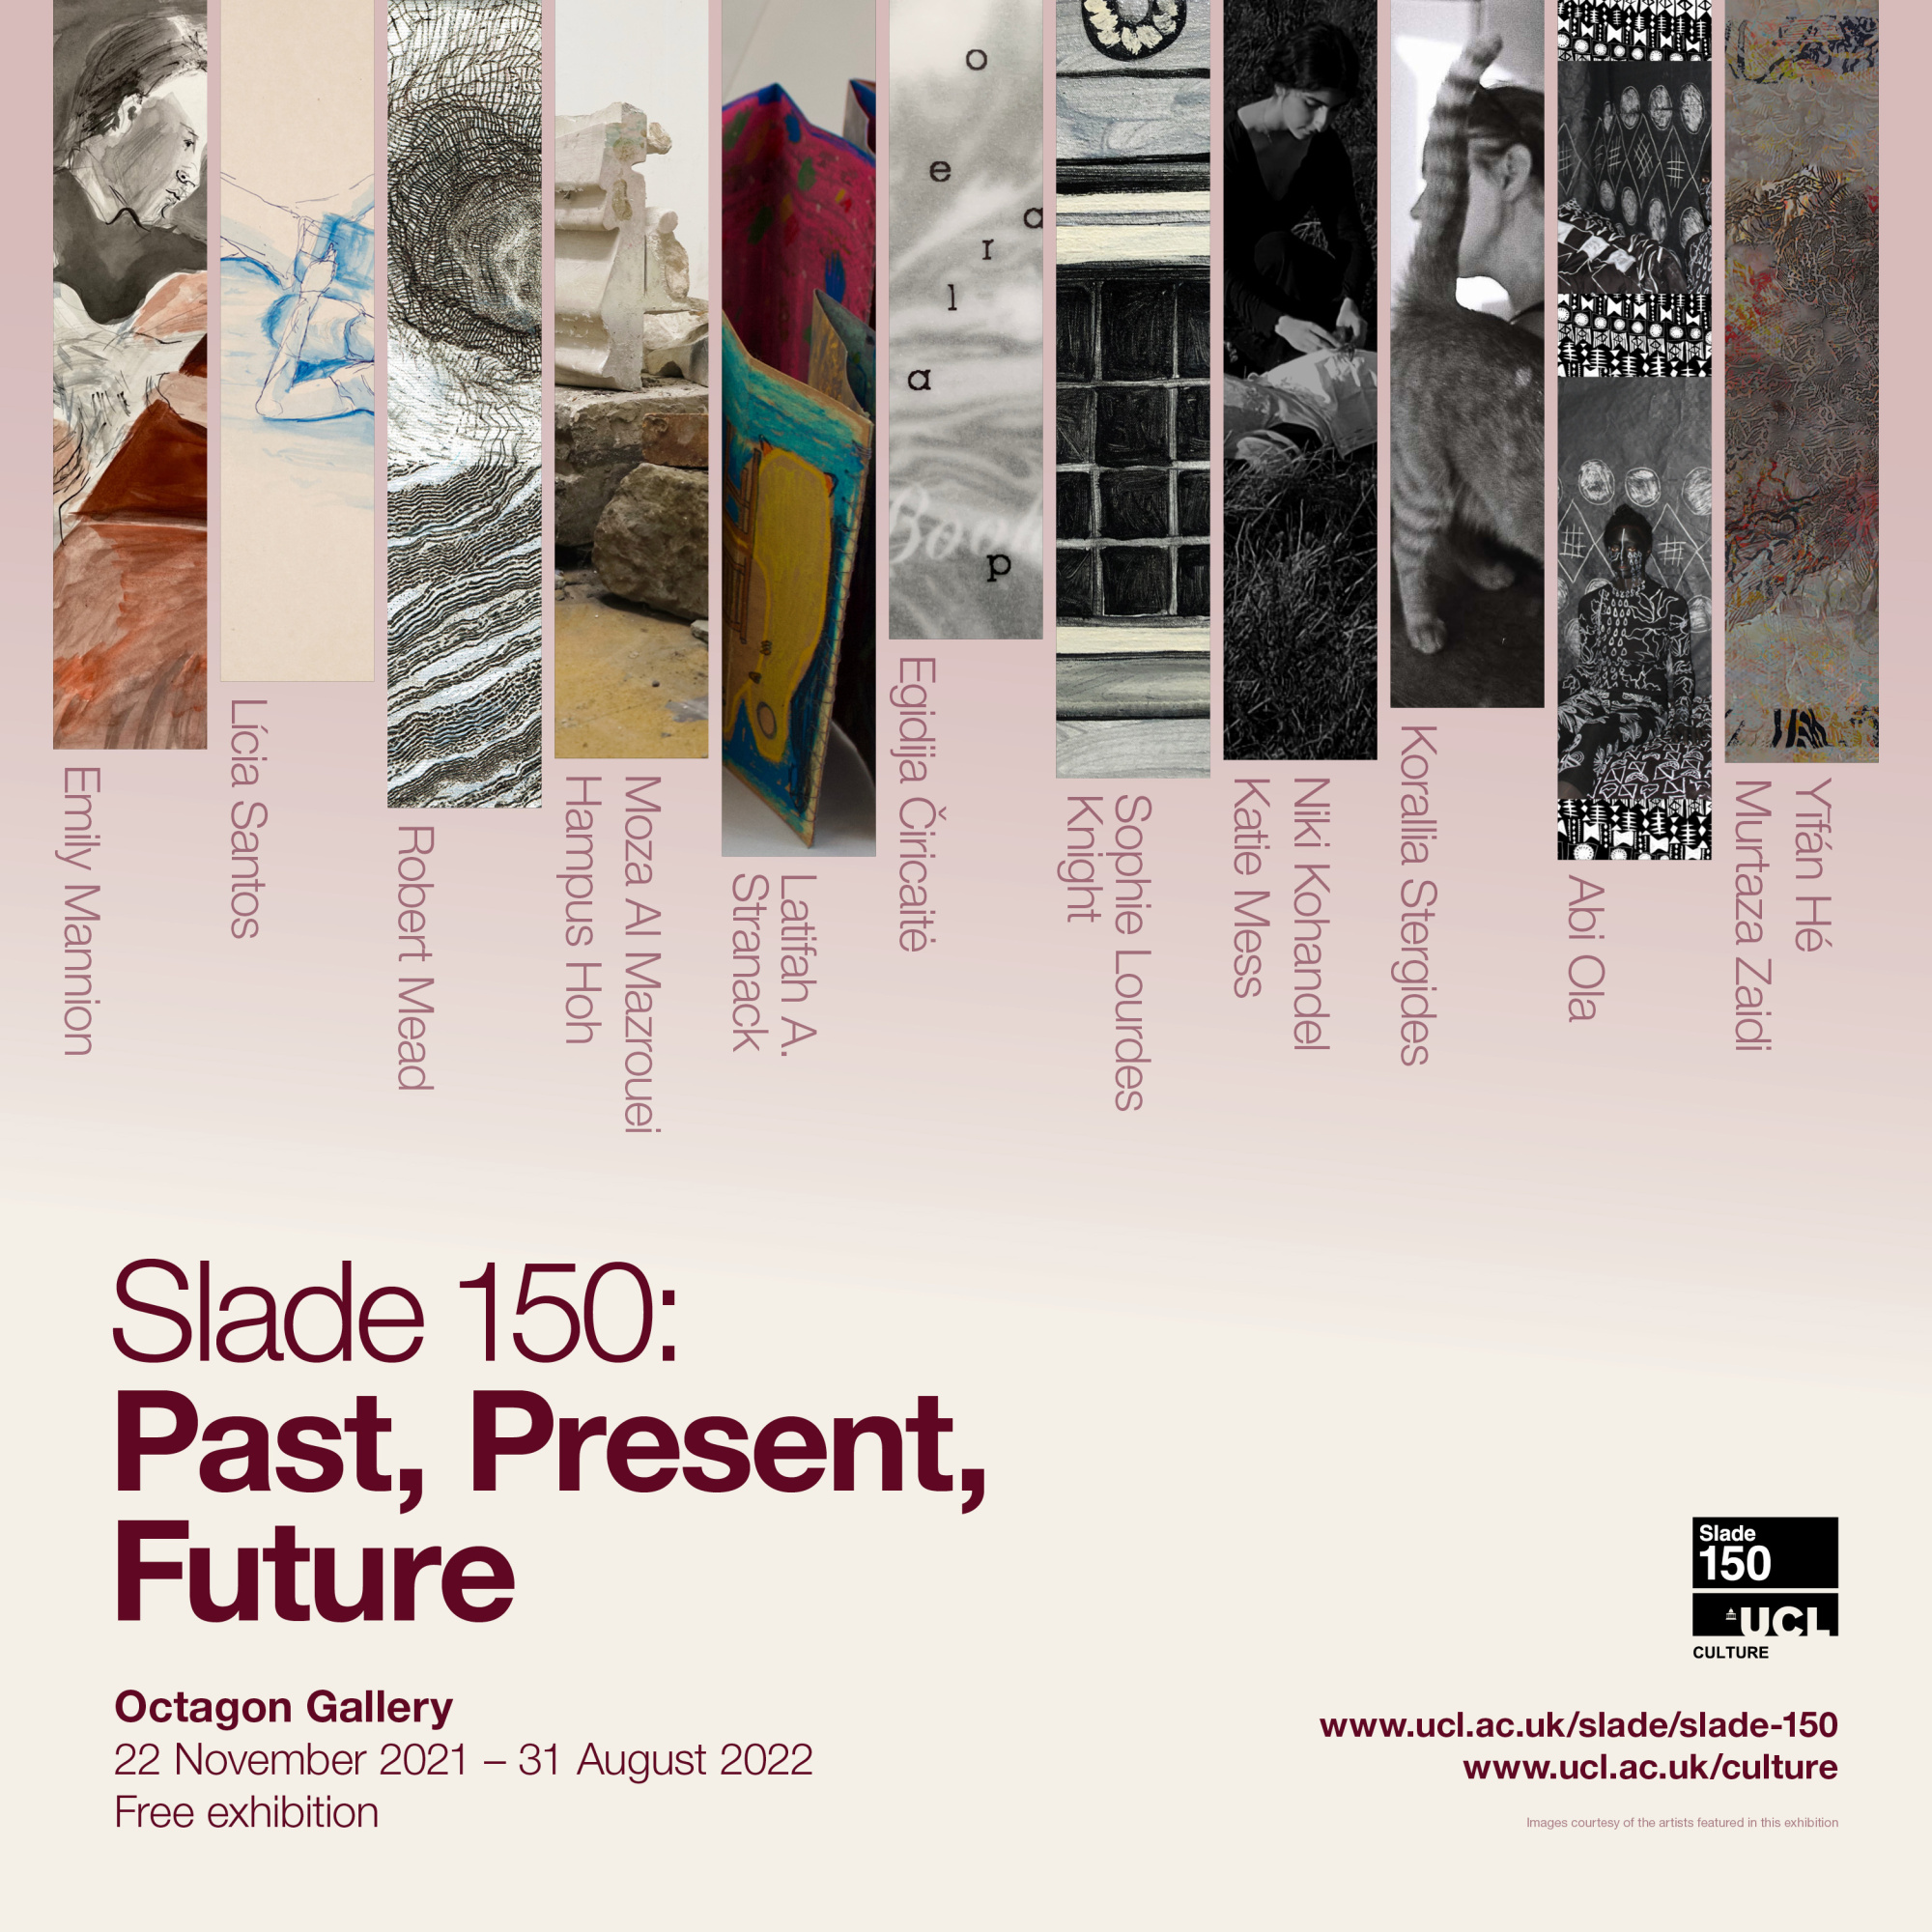 Slade 150: Past, Present, Future